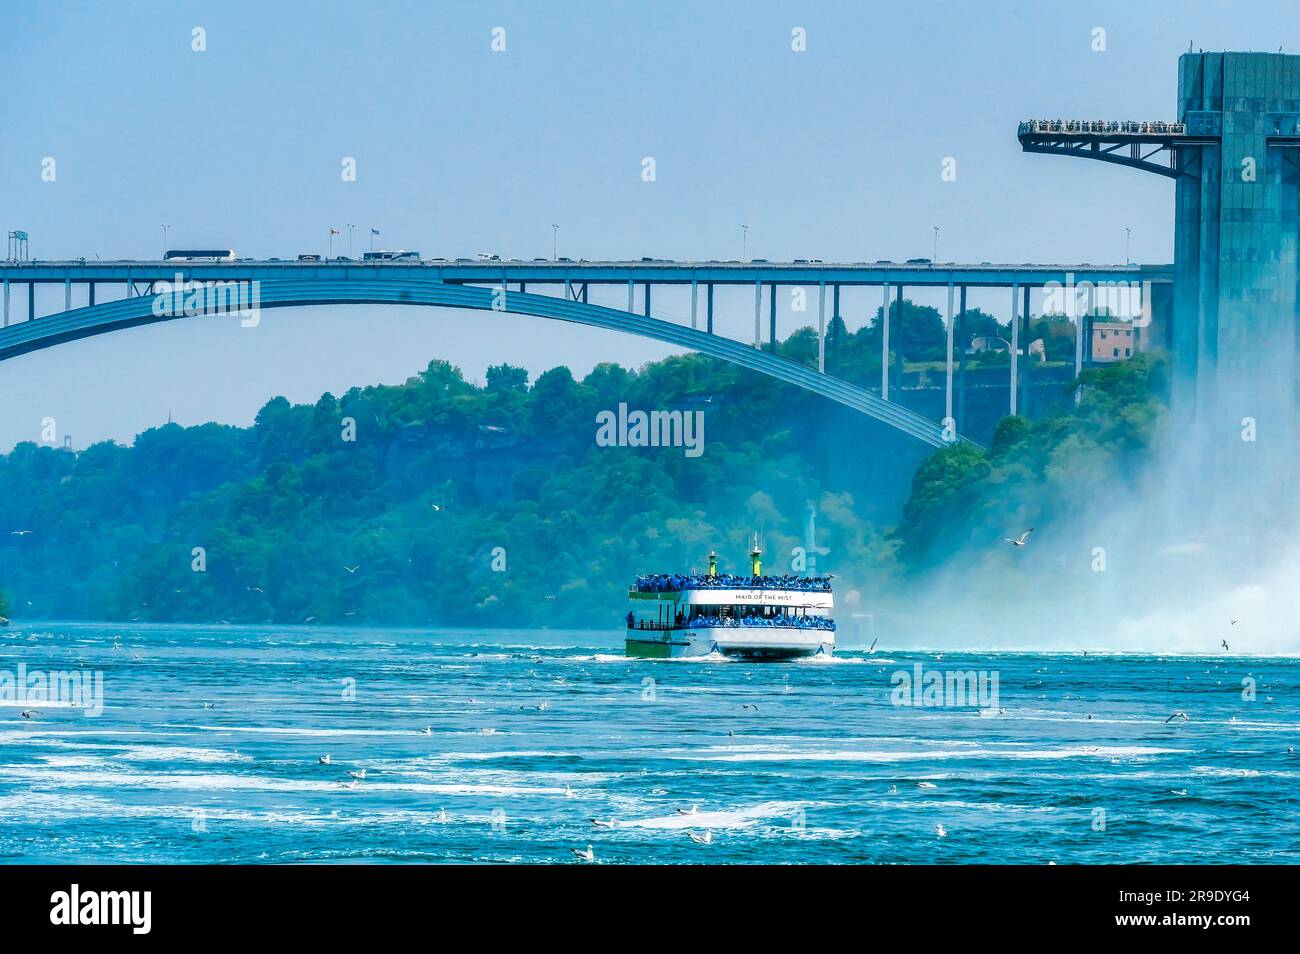 Cascate del Niagara, Ontario, Canada - 17 giugno 2023: Tour in barca o piccole imbarcazioni che trasportano passeggeri sul fiume Niagara. Il giro è un'attrazione turistica Foto Stock